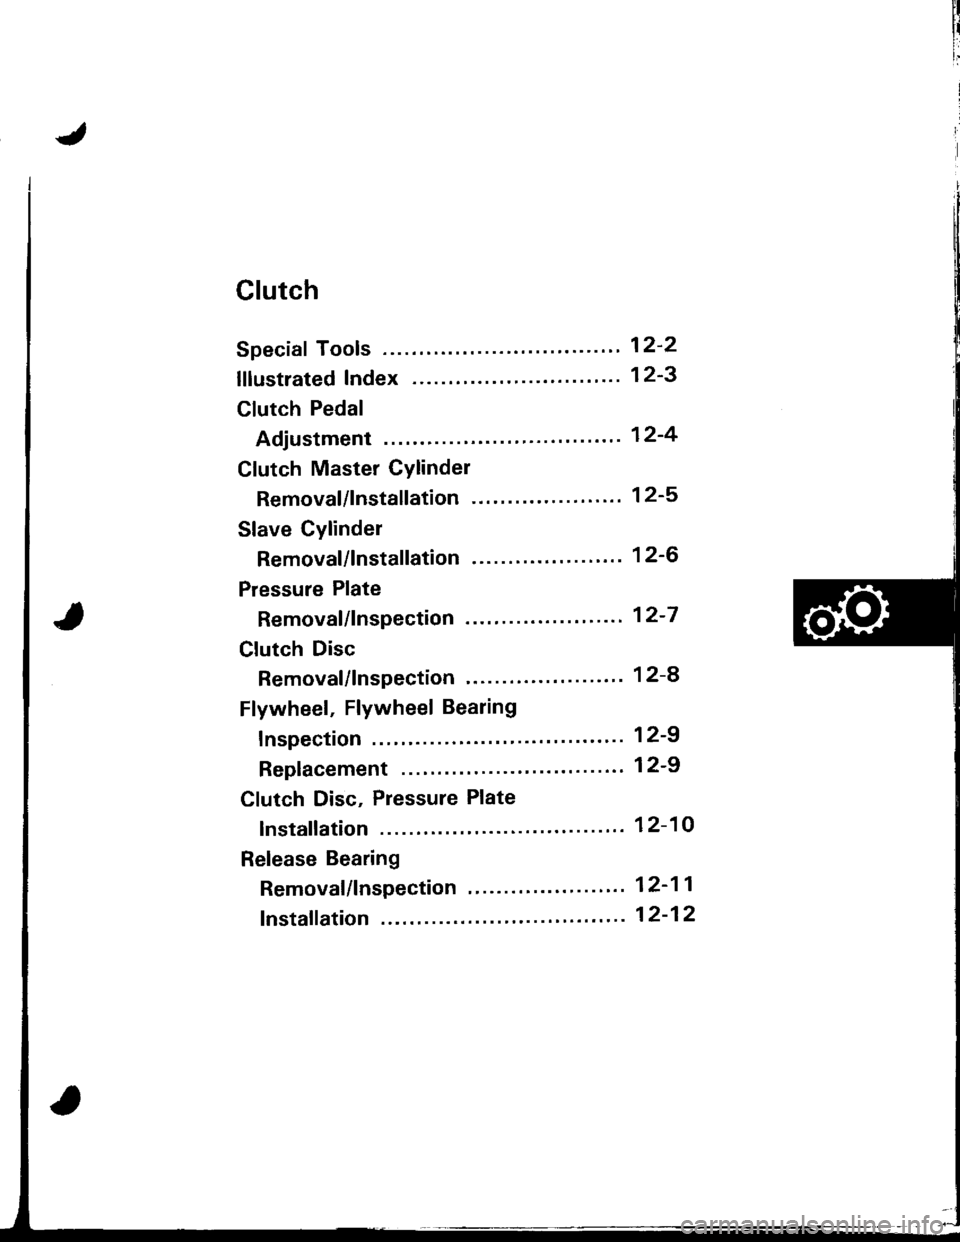 HONDA INTEGRA 1998 4.G Workshop Manual Clutch
Speciaf Tools ........ .--"" 12-2
lflustrated Index ........ ". 12-3
Clutch Pedal
Adjustment "..".""... 12-4
Clutch Master Cylinder
Removal/lnstallation -. 12-5
Slave Cylinder
Removal/lns